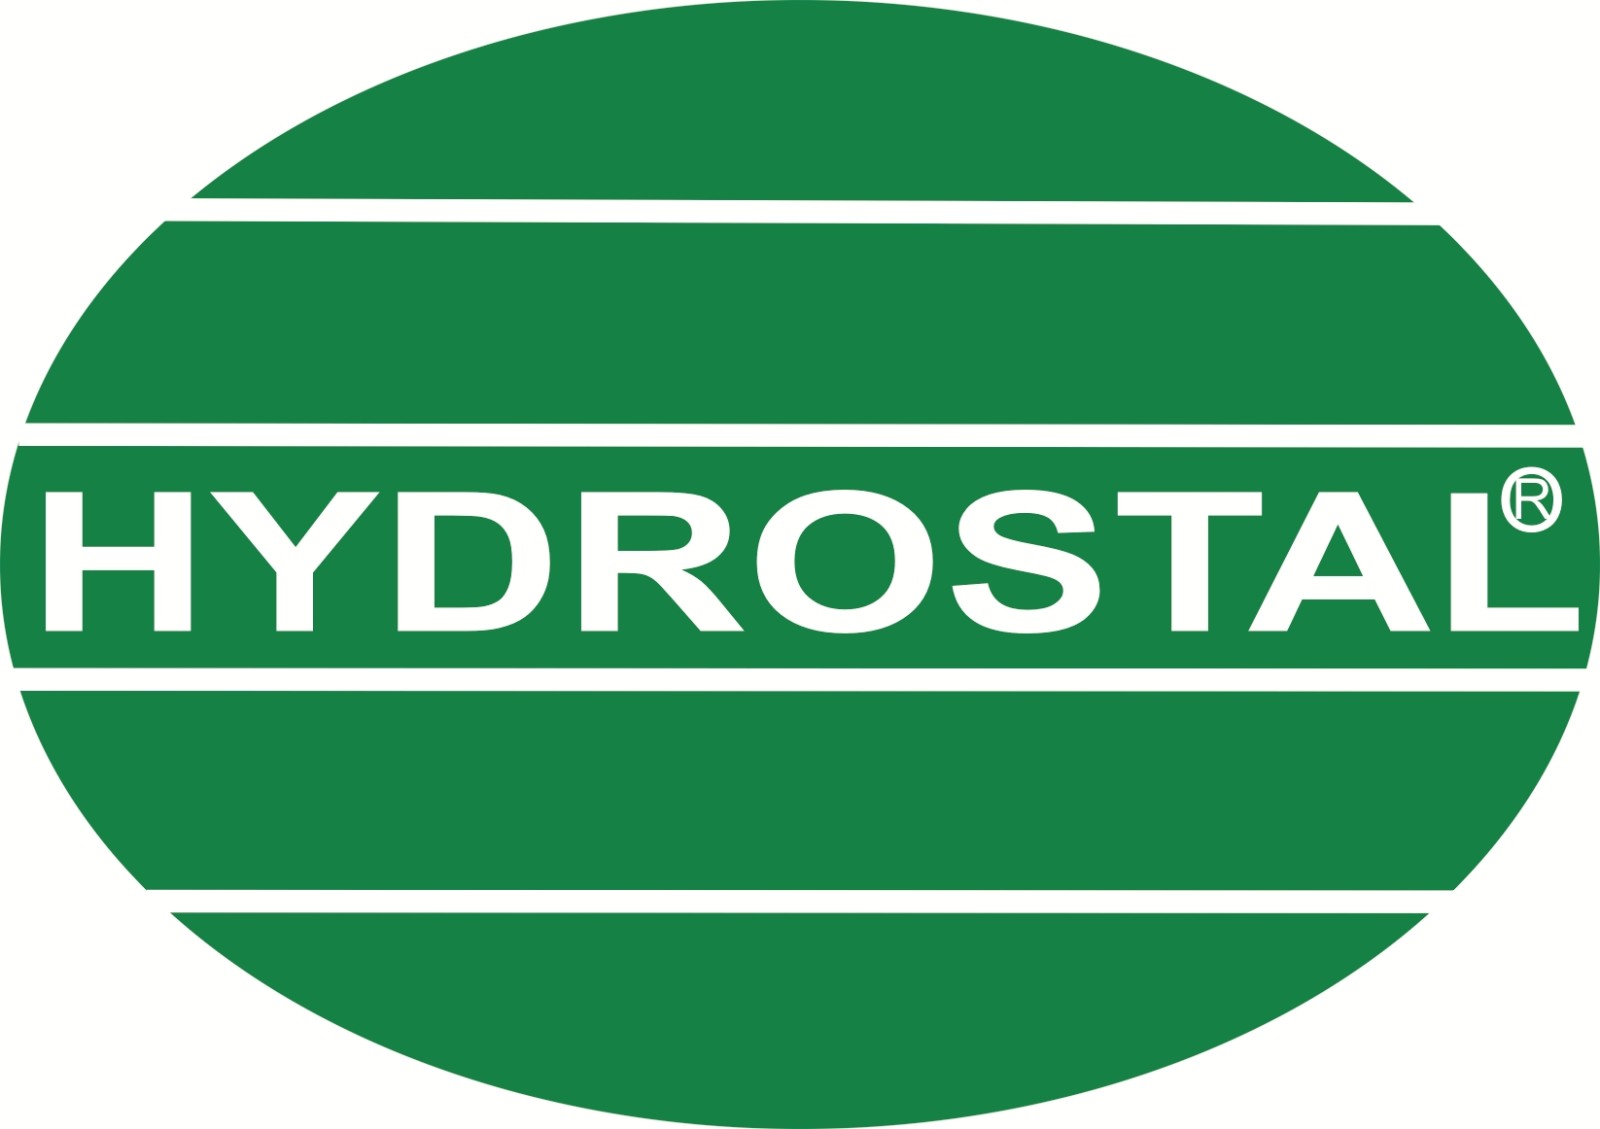 Hydrostal